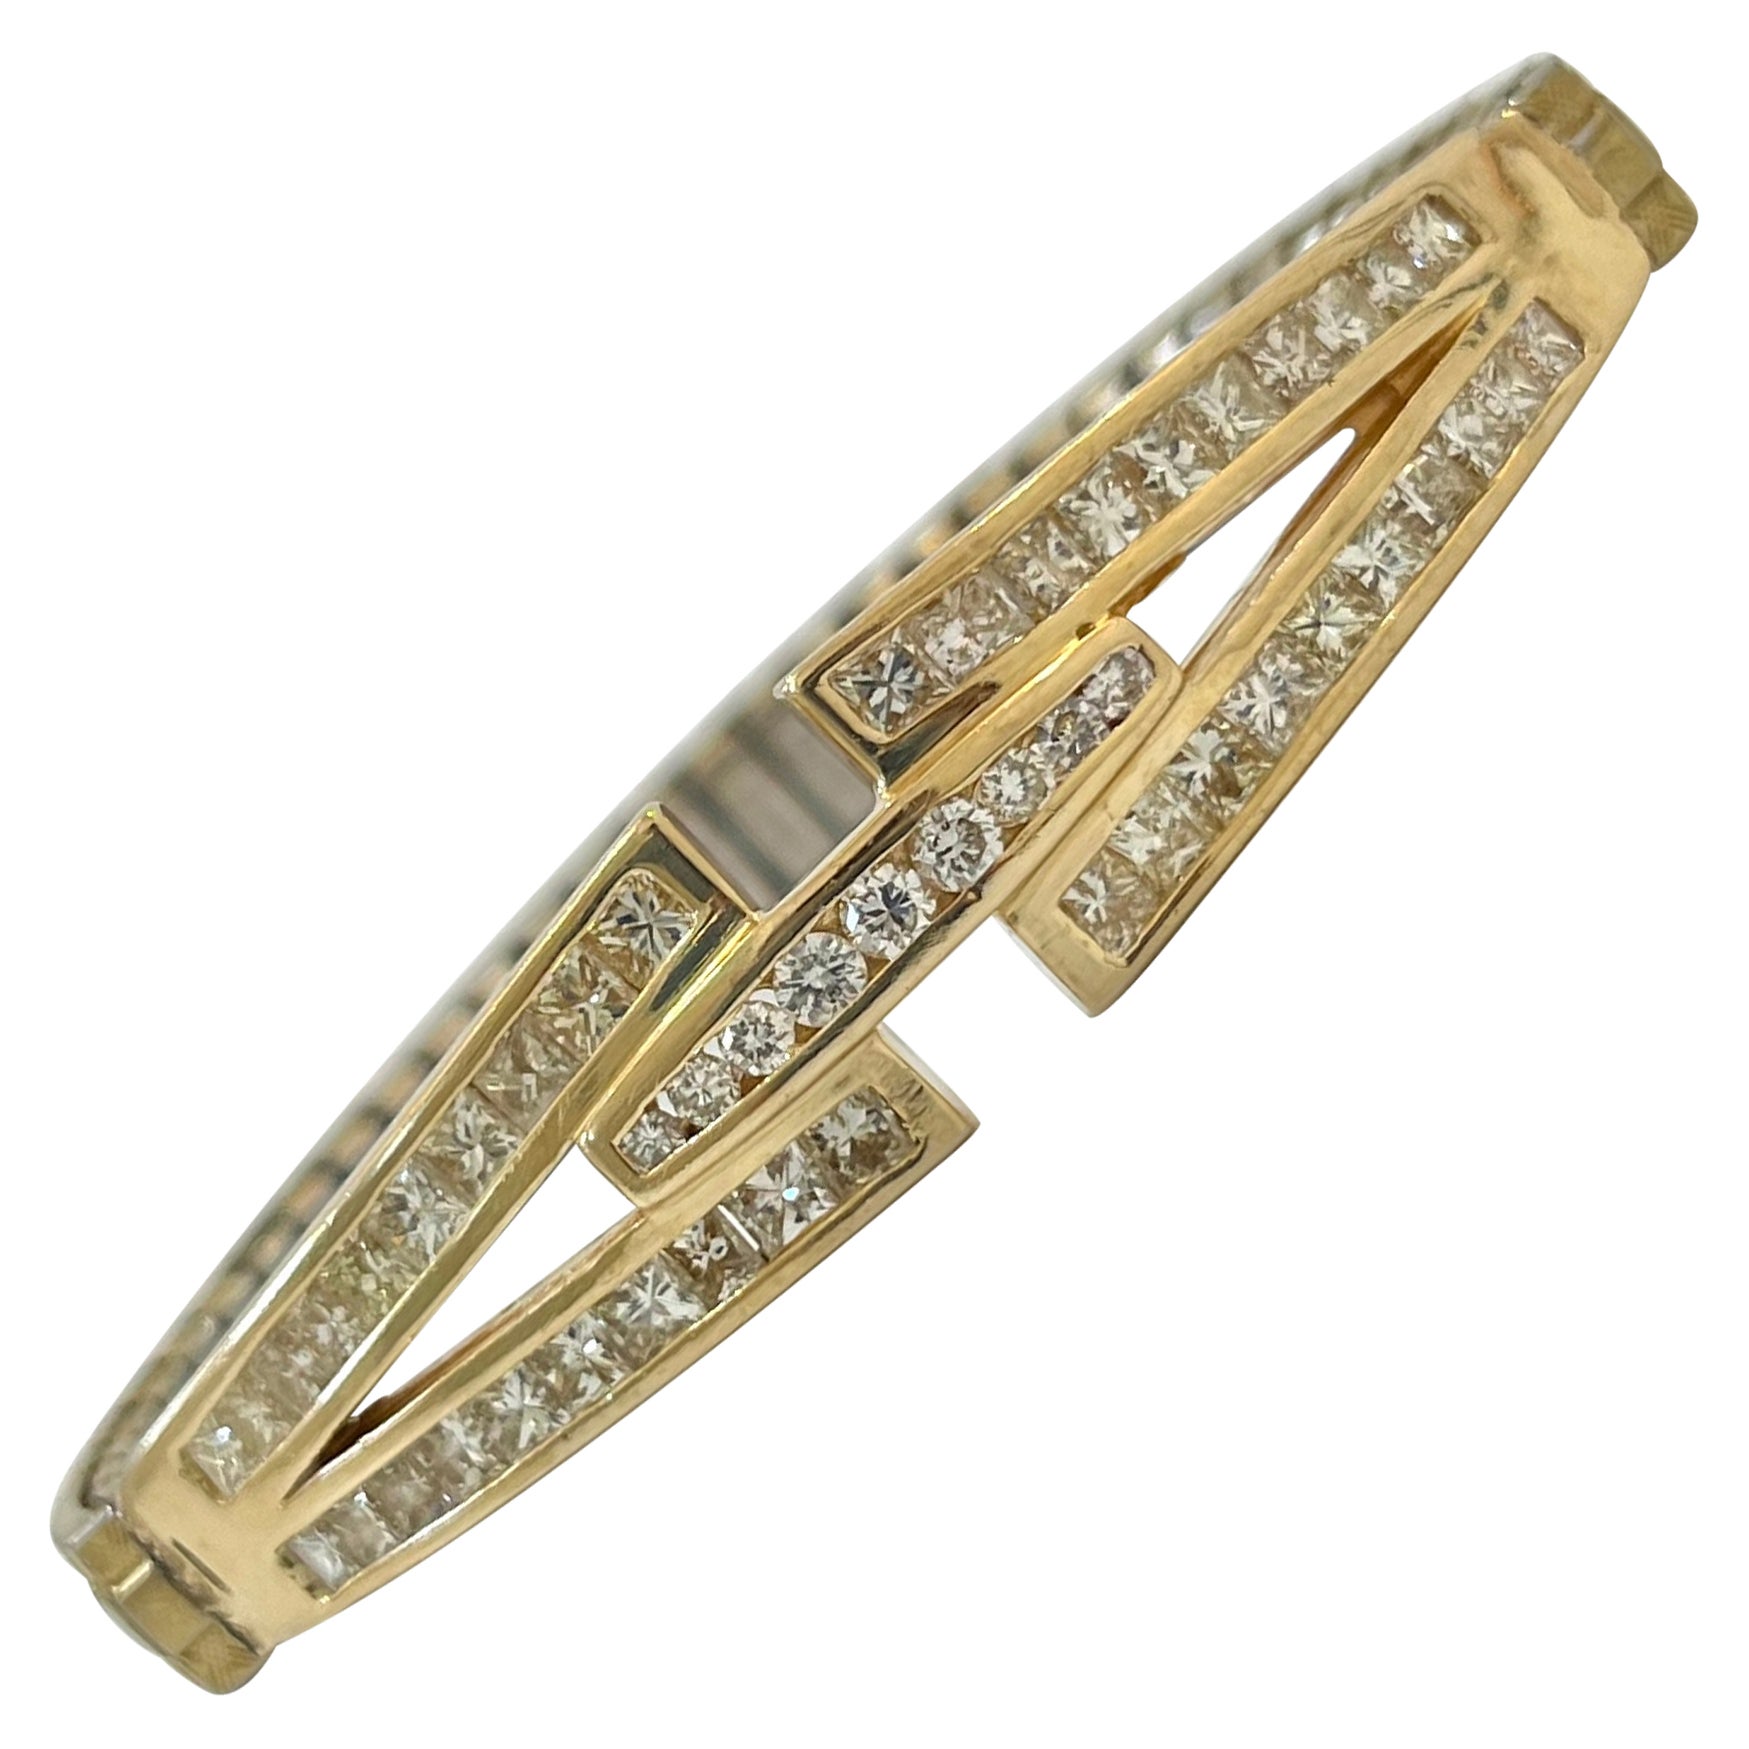 3 carat Natural Round Diamond adjustable Stretch bracelet signed Speidel For Sale